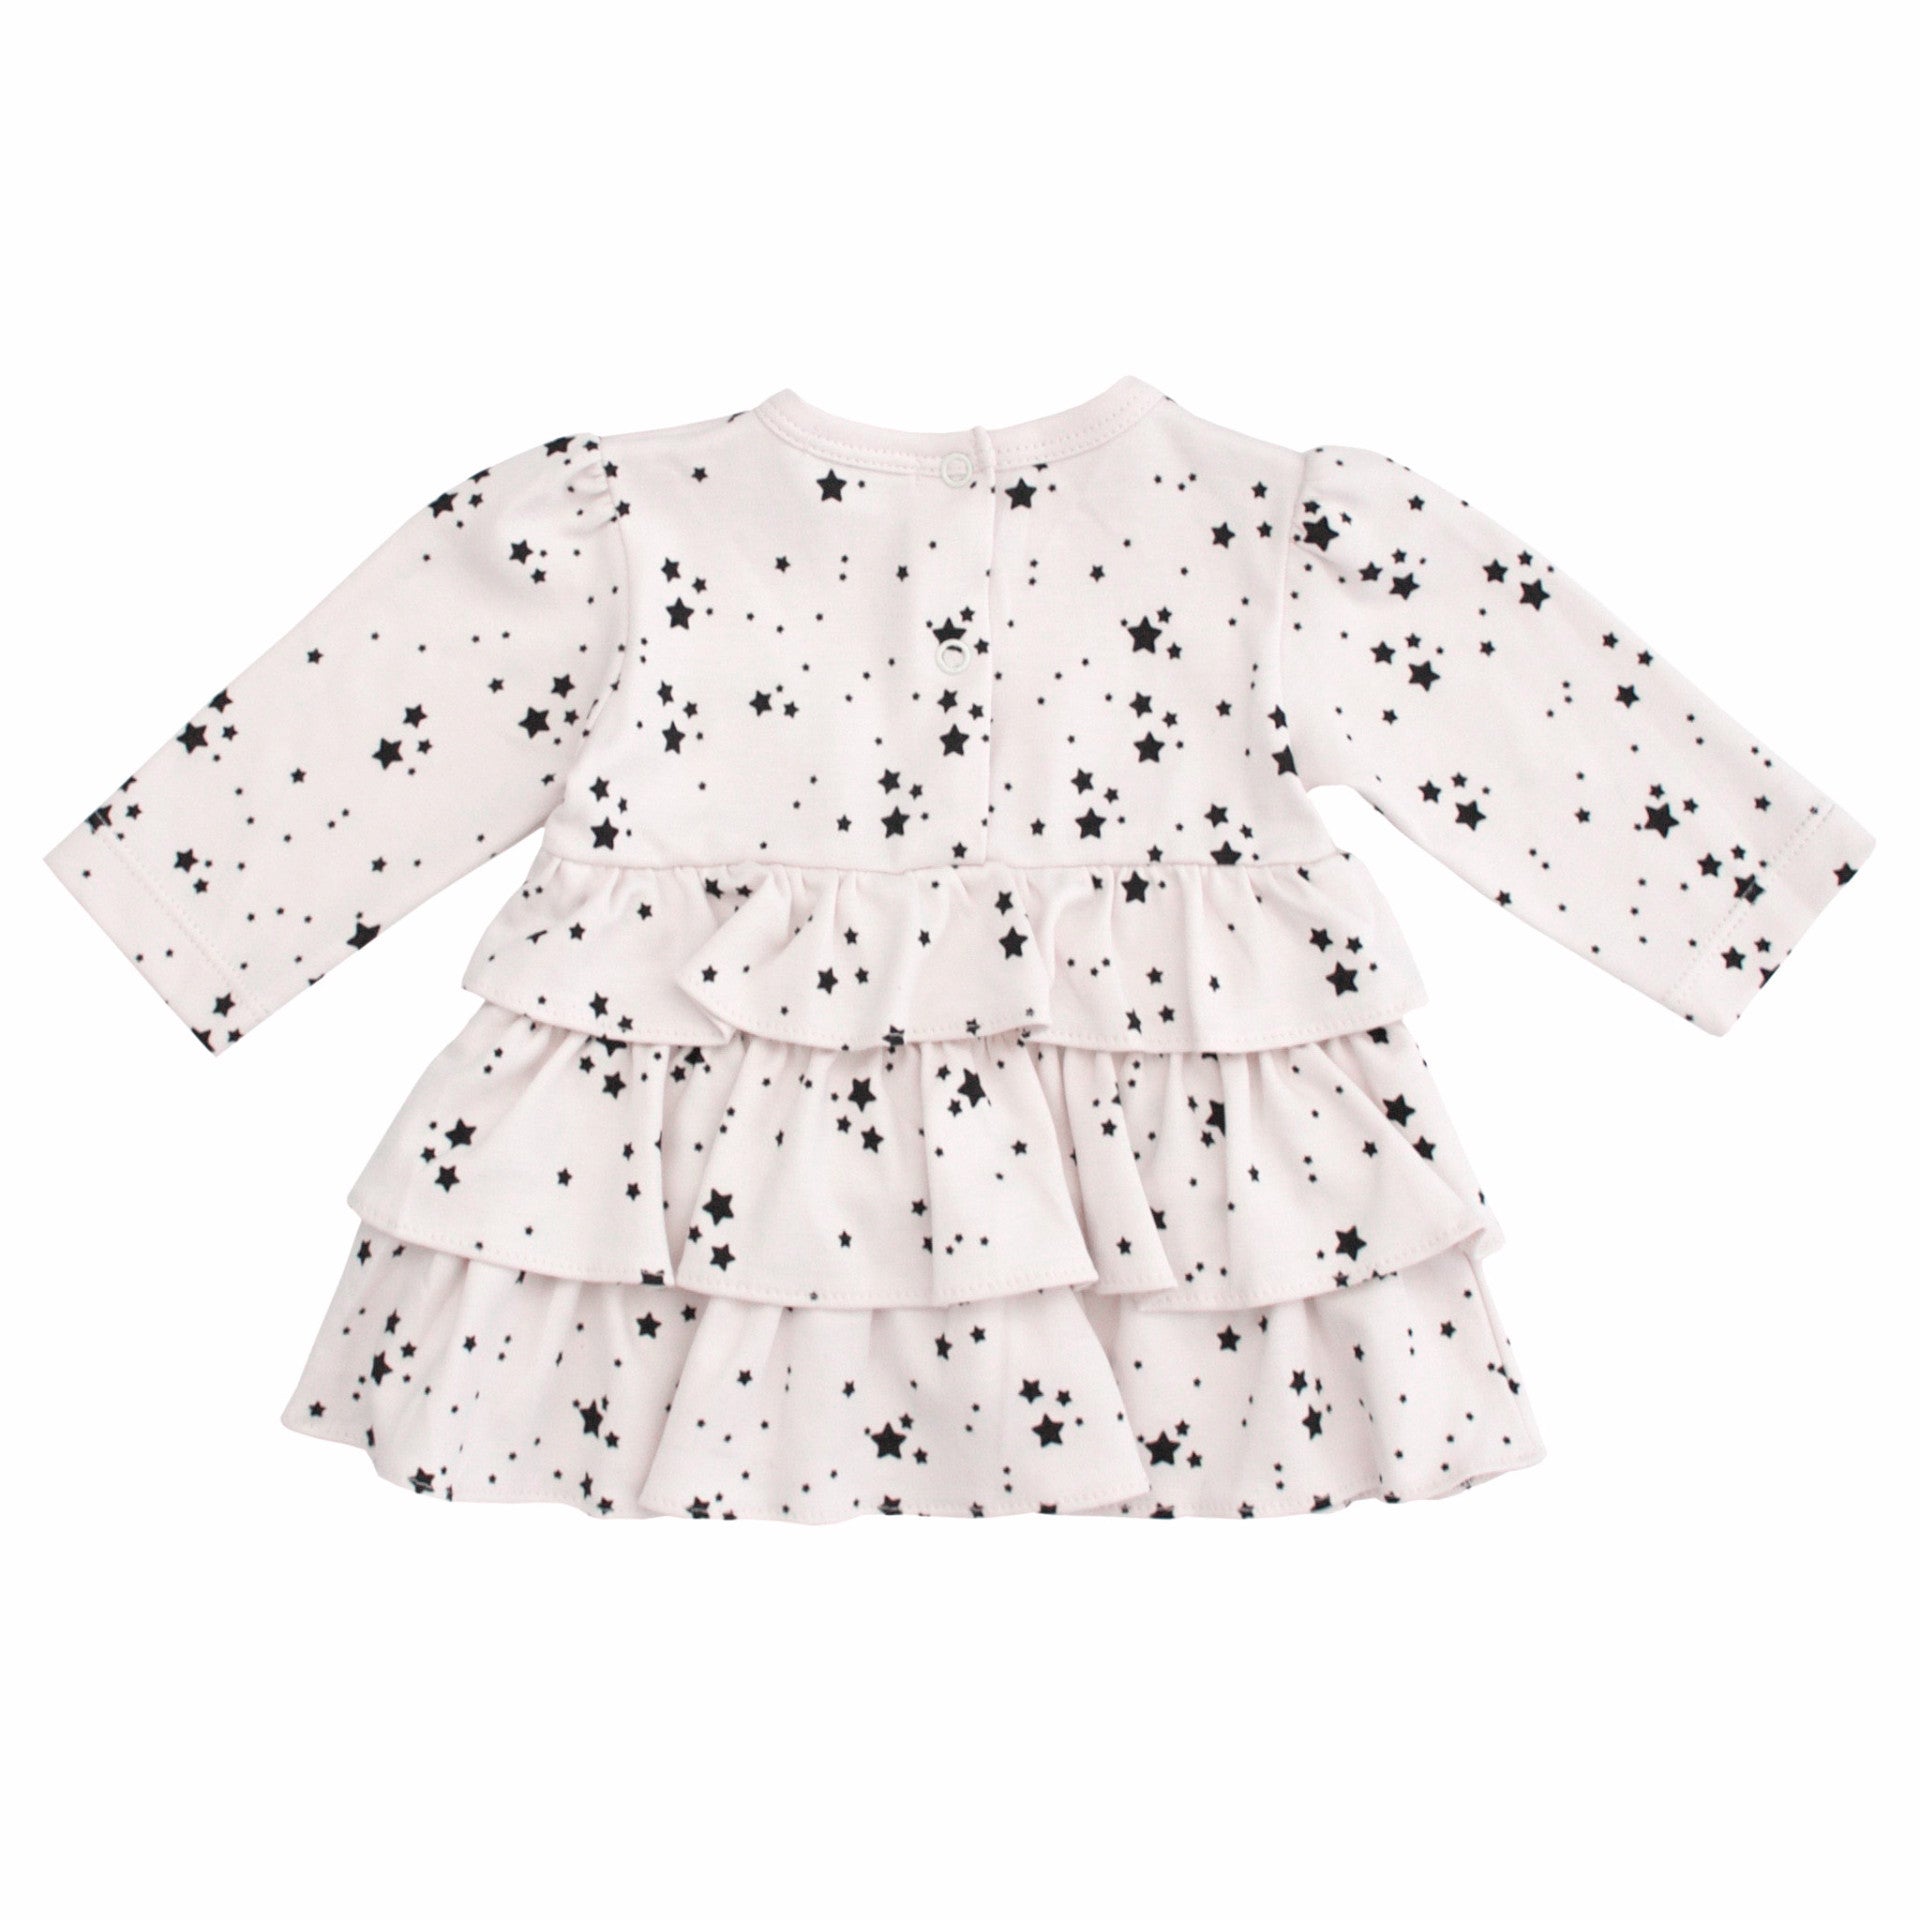 Livly Kids dresses Star Dress - Ever Simplicity